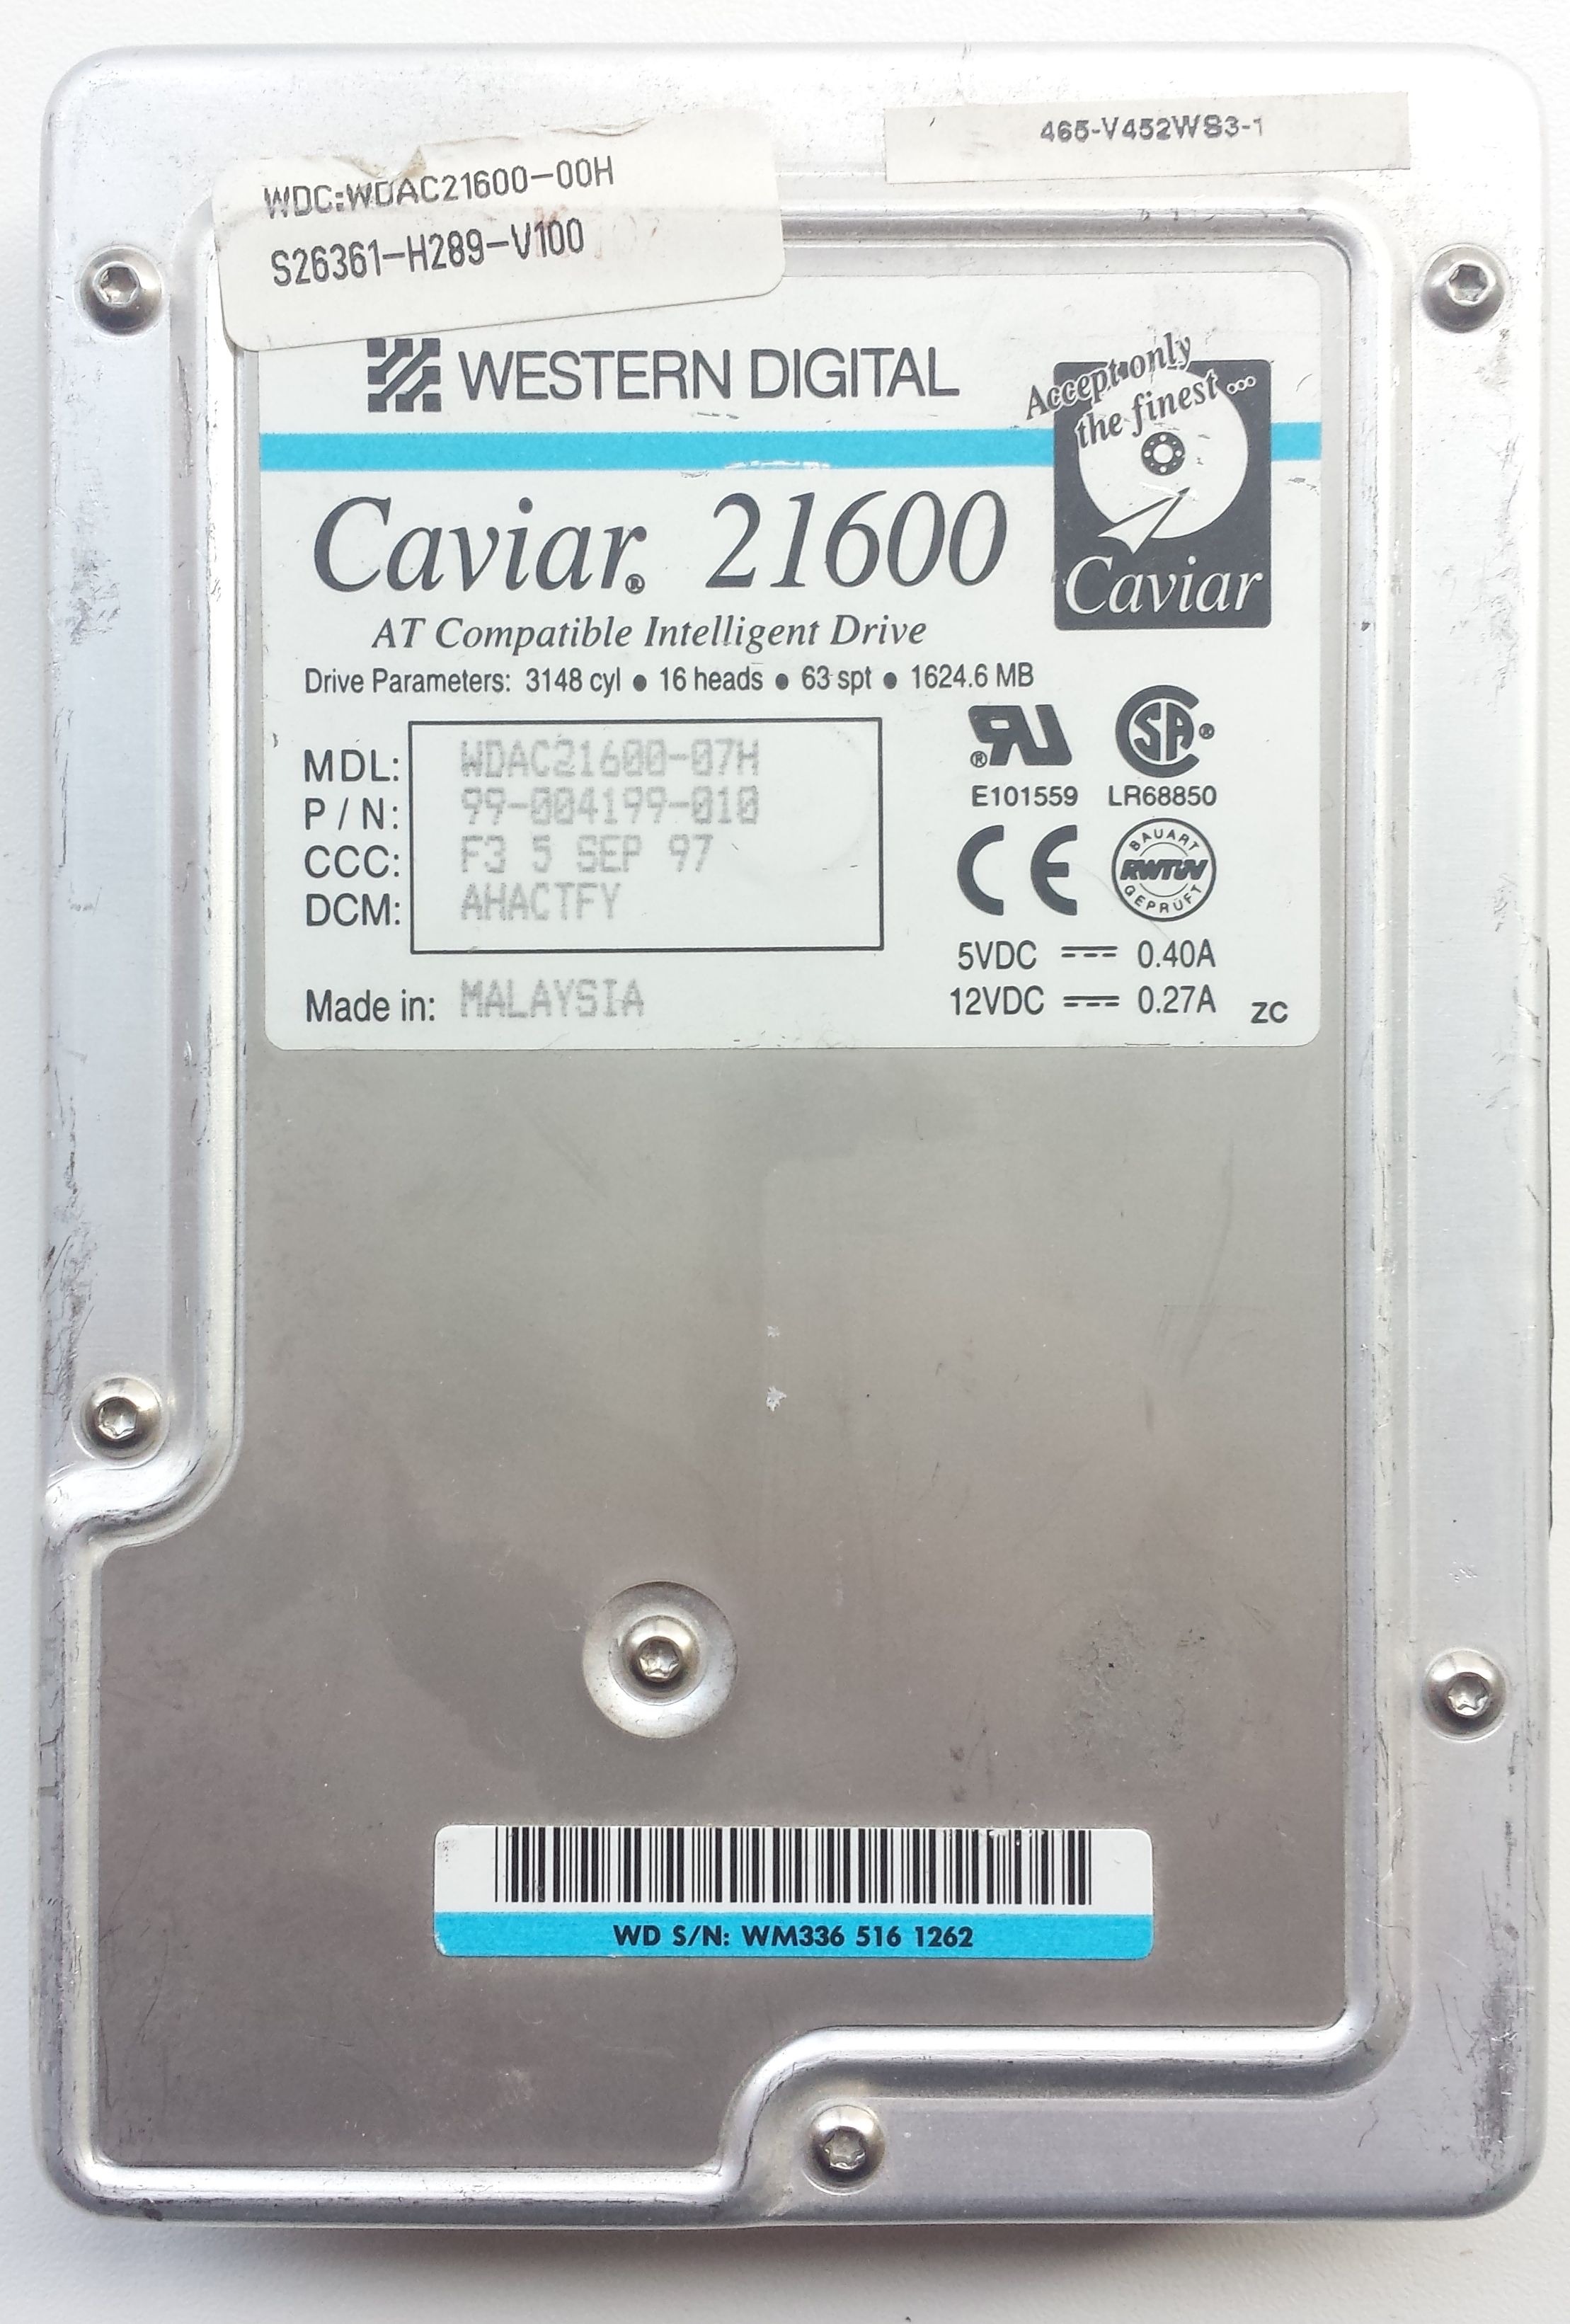 HDD PATA/33 3.5" 1.6GB / Western Digital Caviar 21600 (WDAC21600)